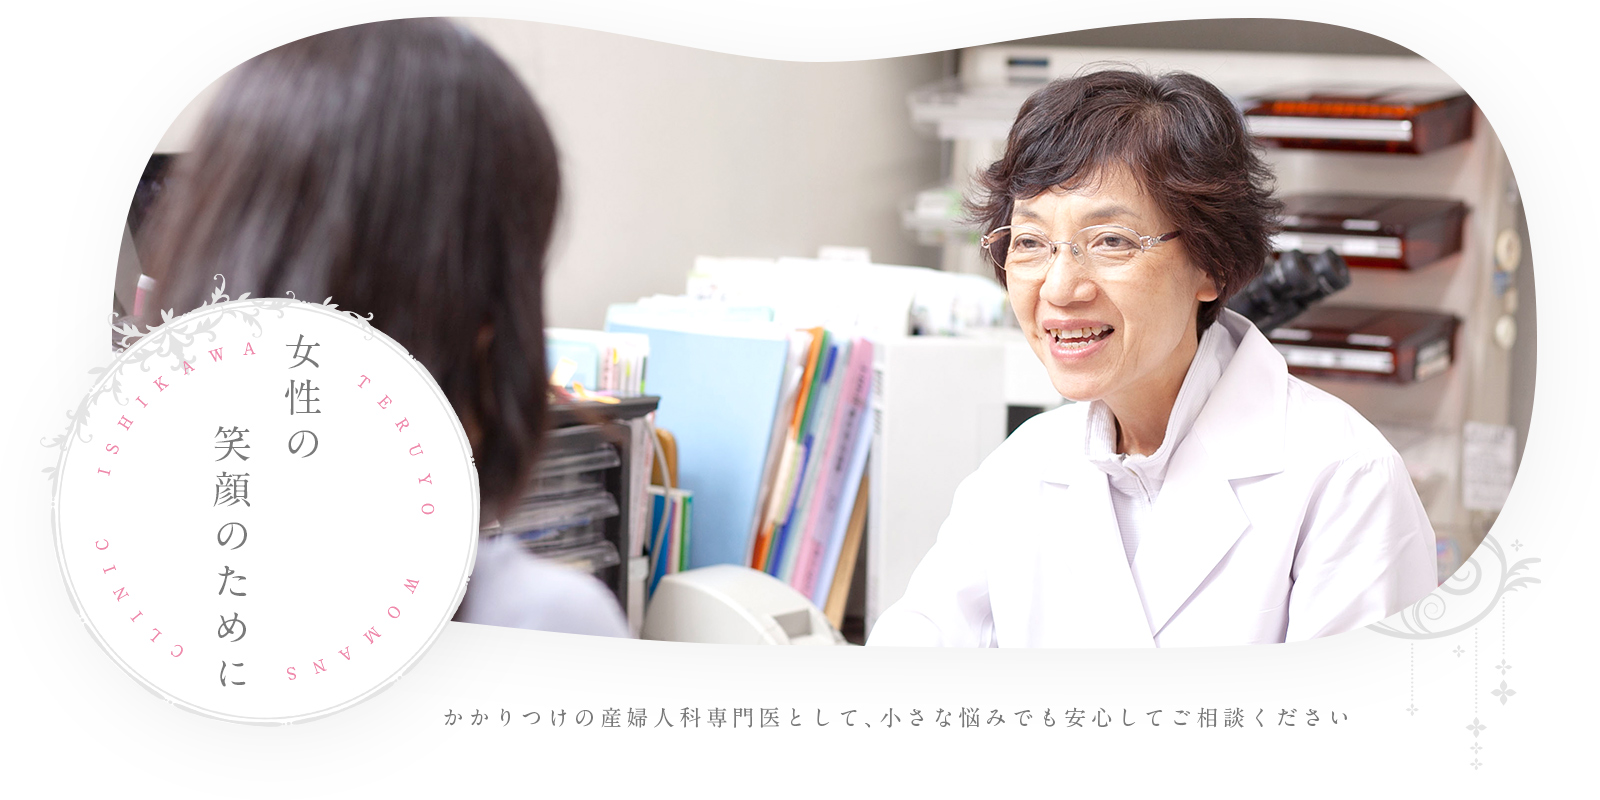 女性の笑顔のために ISHIKAWA TERUYO WOMANS CLINIC かかりつけの産婦人科専門医として、小さな悩みでも安心してご相談ください